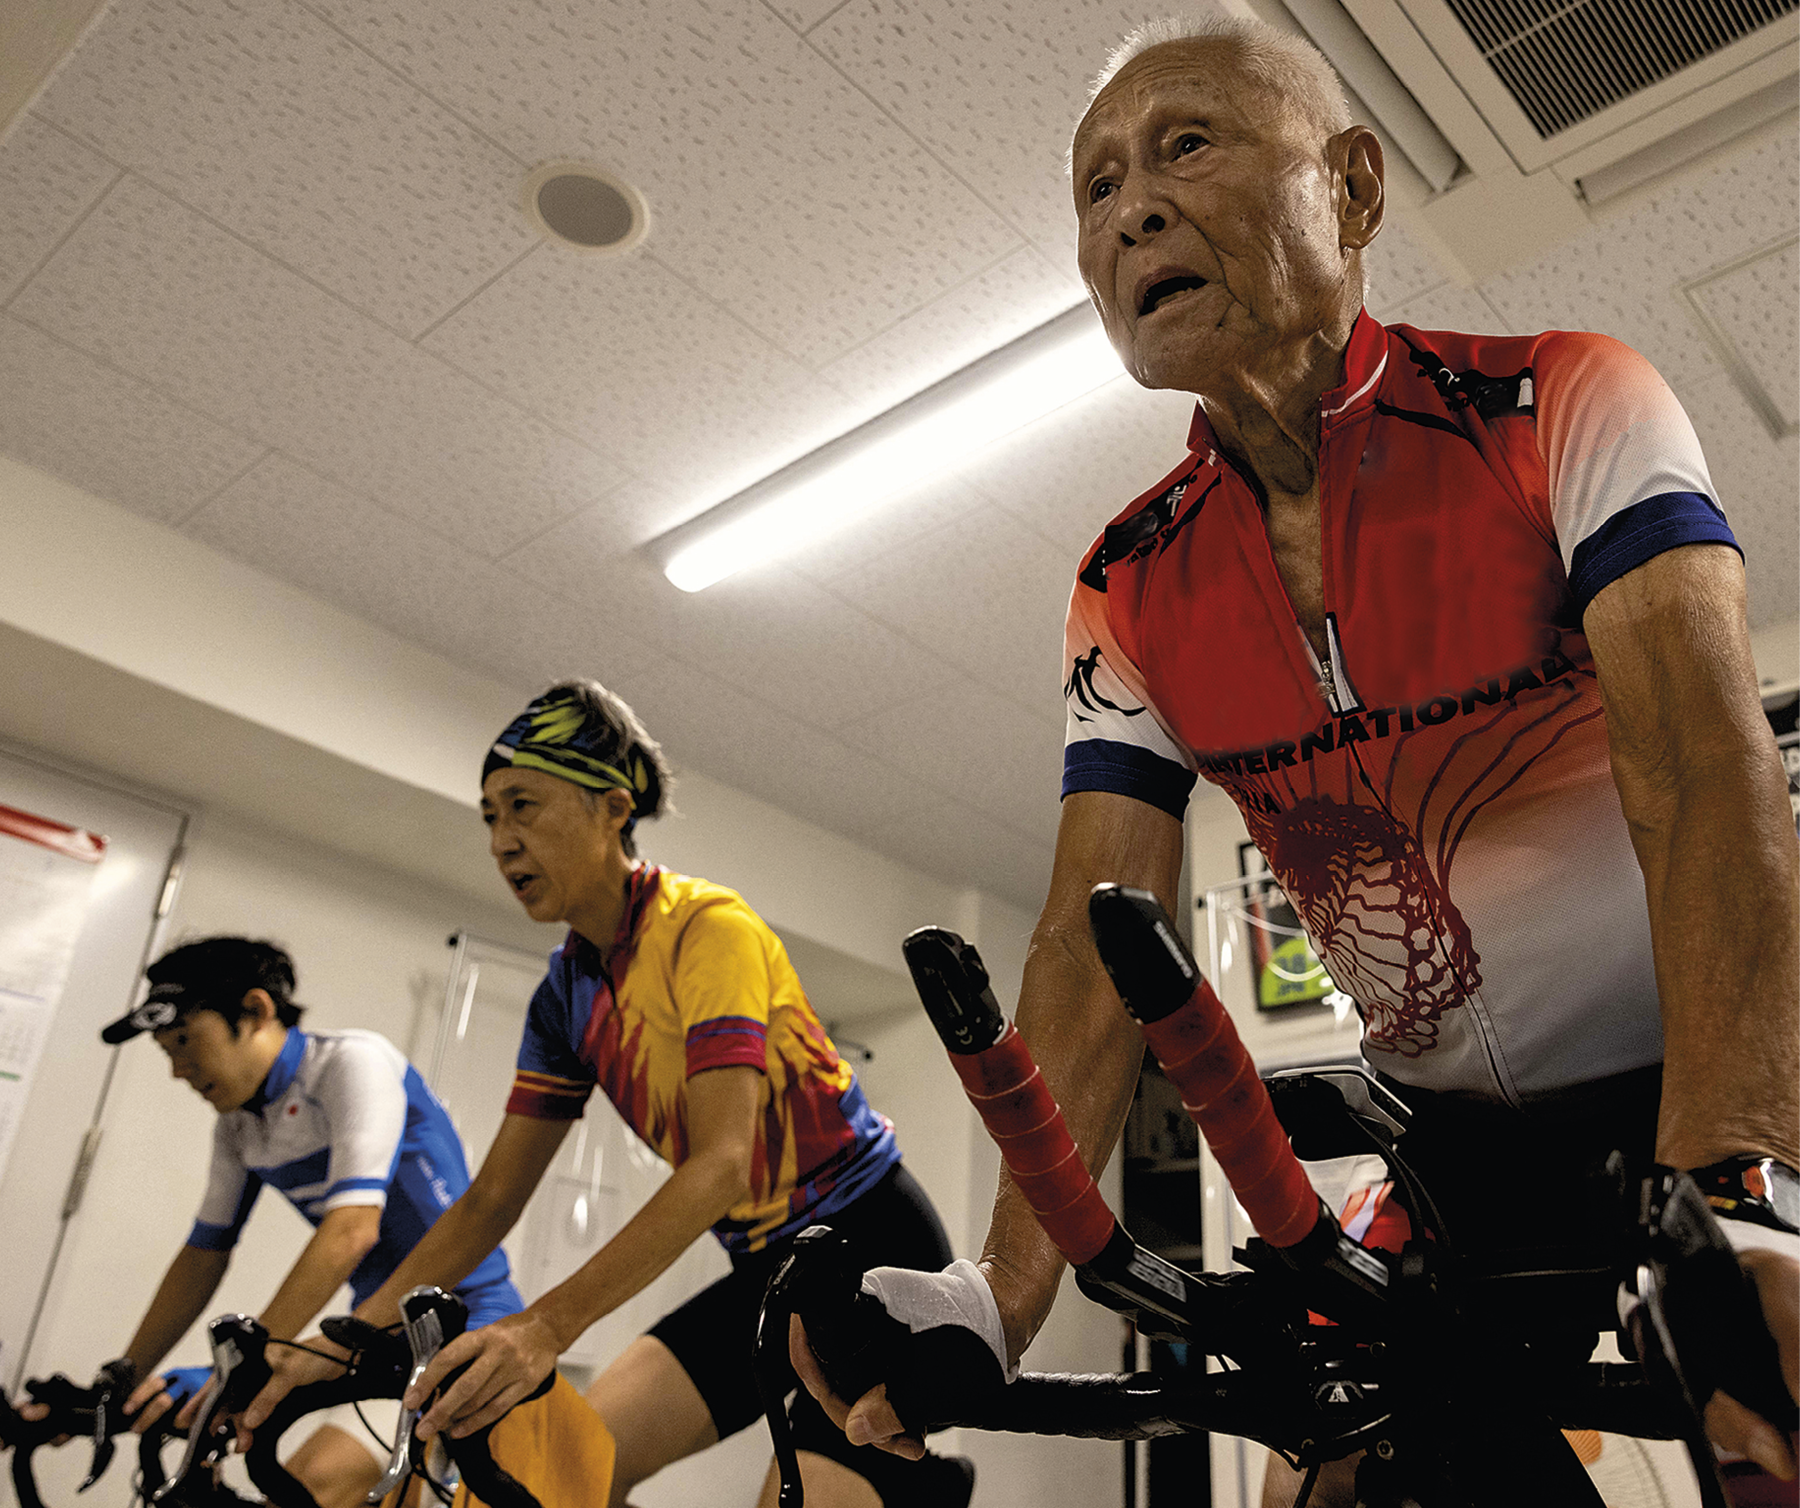 Fotografia. Vista do espaço interno de uma sala com três pessoas, duas delas idosas, pedalando em bicicletas ergométricas. As pessoas vestem roupas esportivas coloridas.